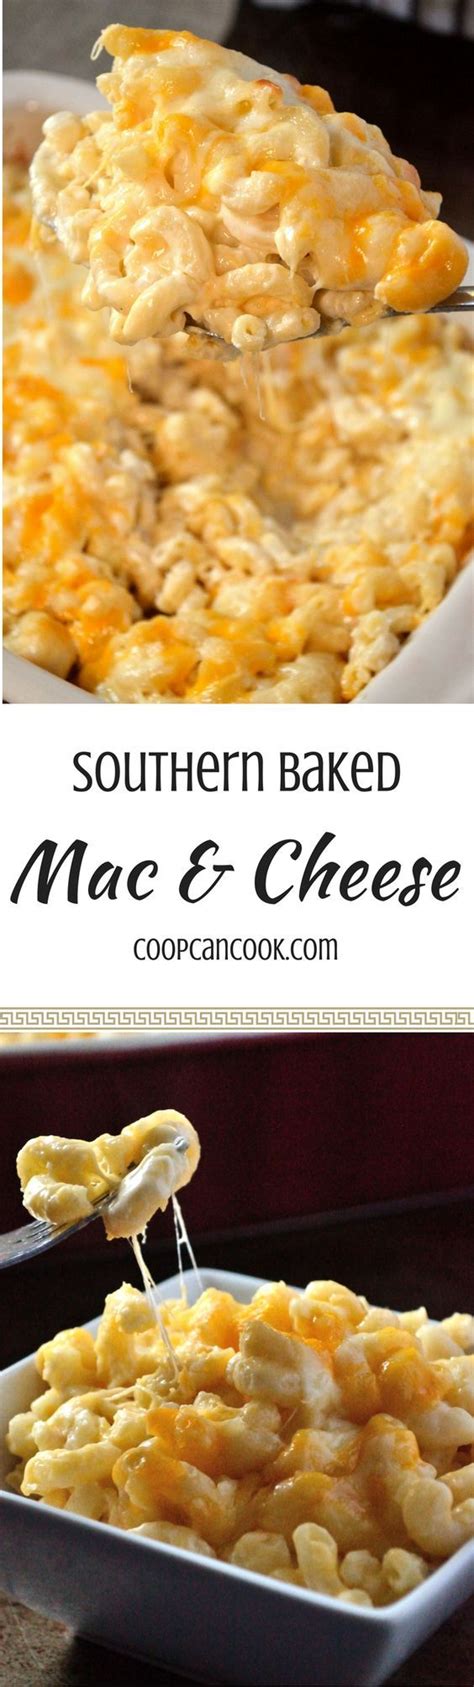 Baked Mac And Cheese Recipe Bake Mac And Cheese Mac Cheese Cheese Recipes Pasta Recipes